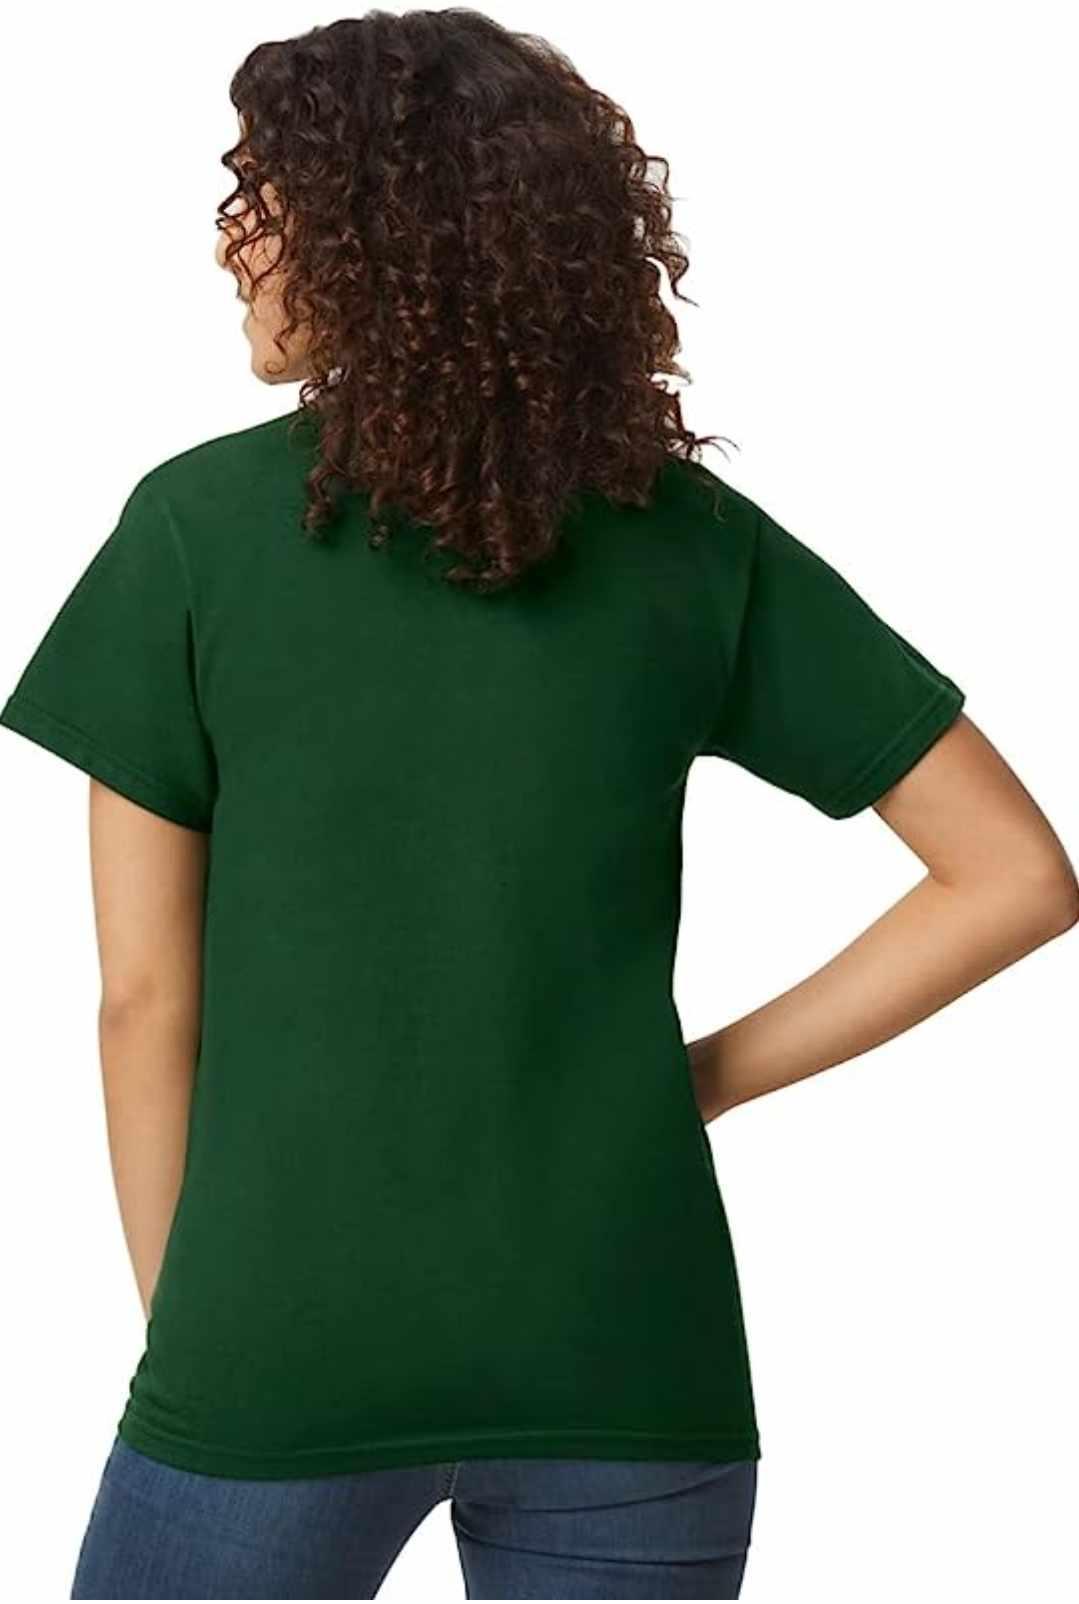 Women's Green T-Shirt - Premium  from Luxe-Custom-Designer - Just £15! Shop now at Luxe-Custom-Designer